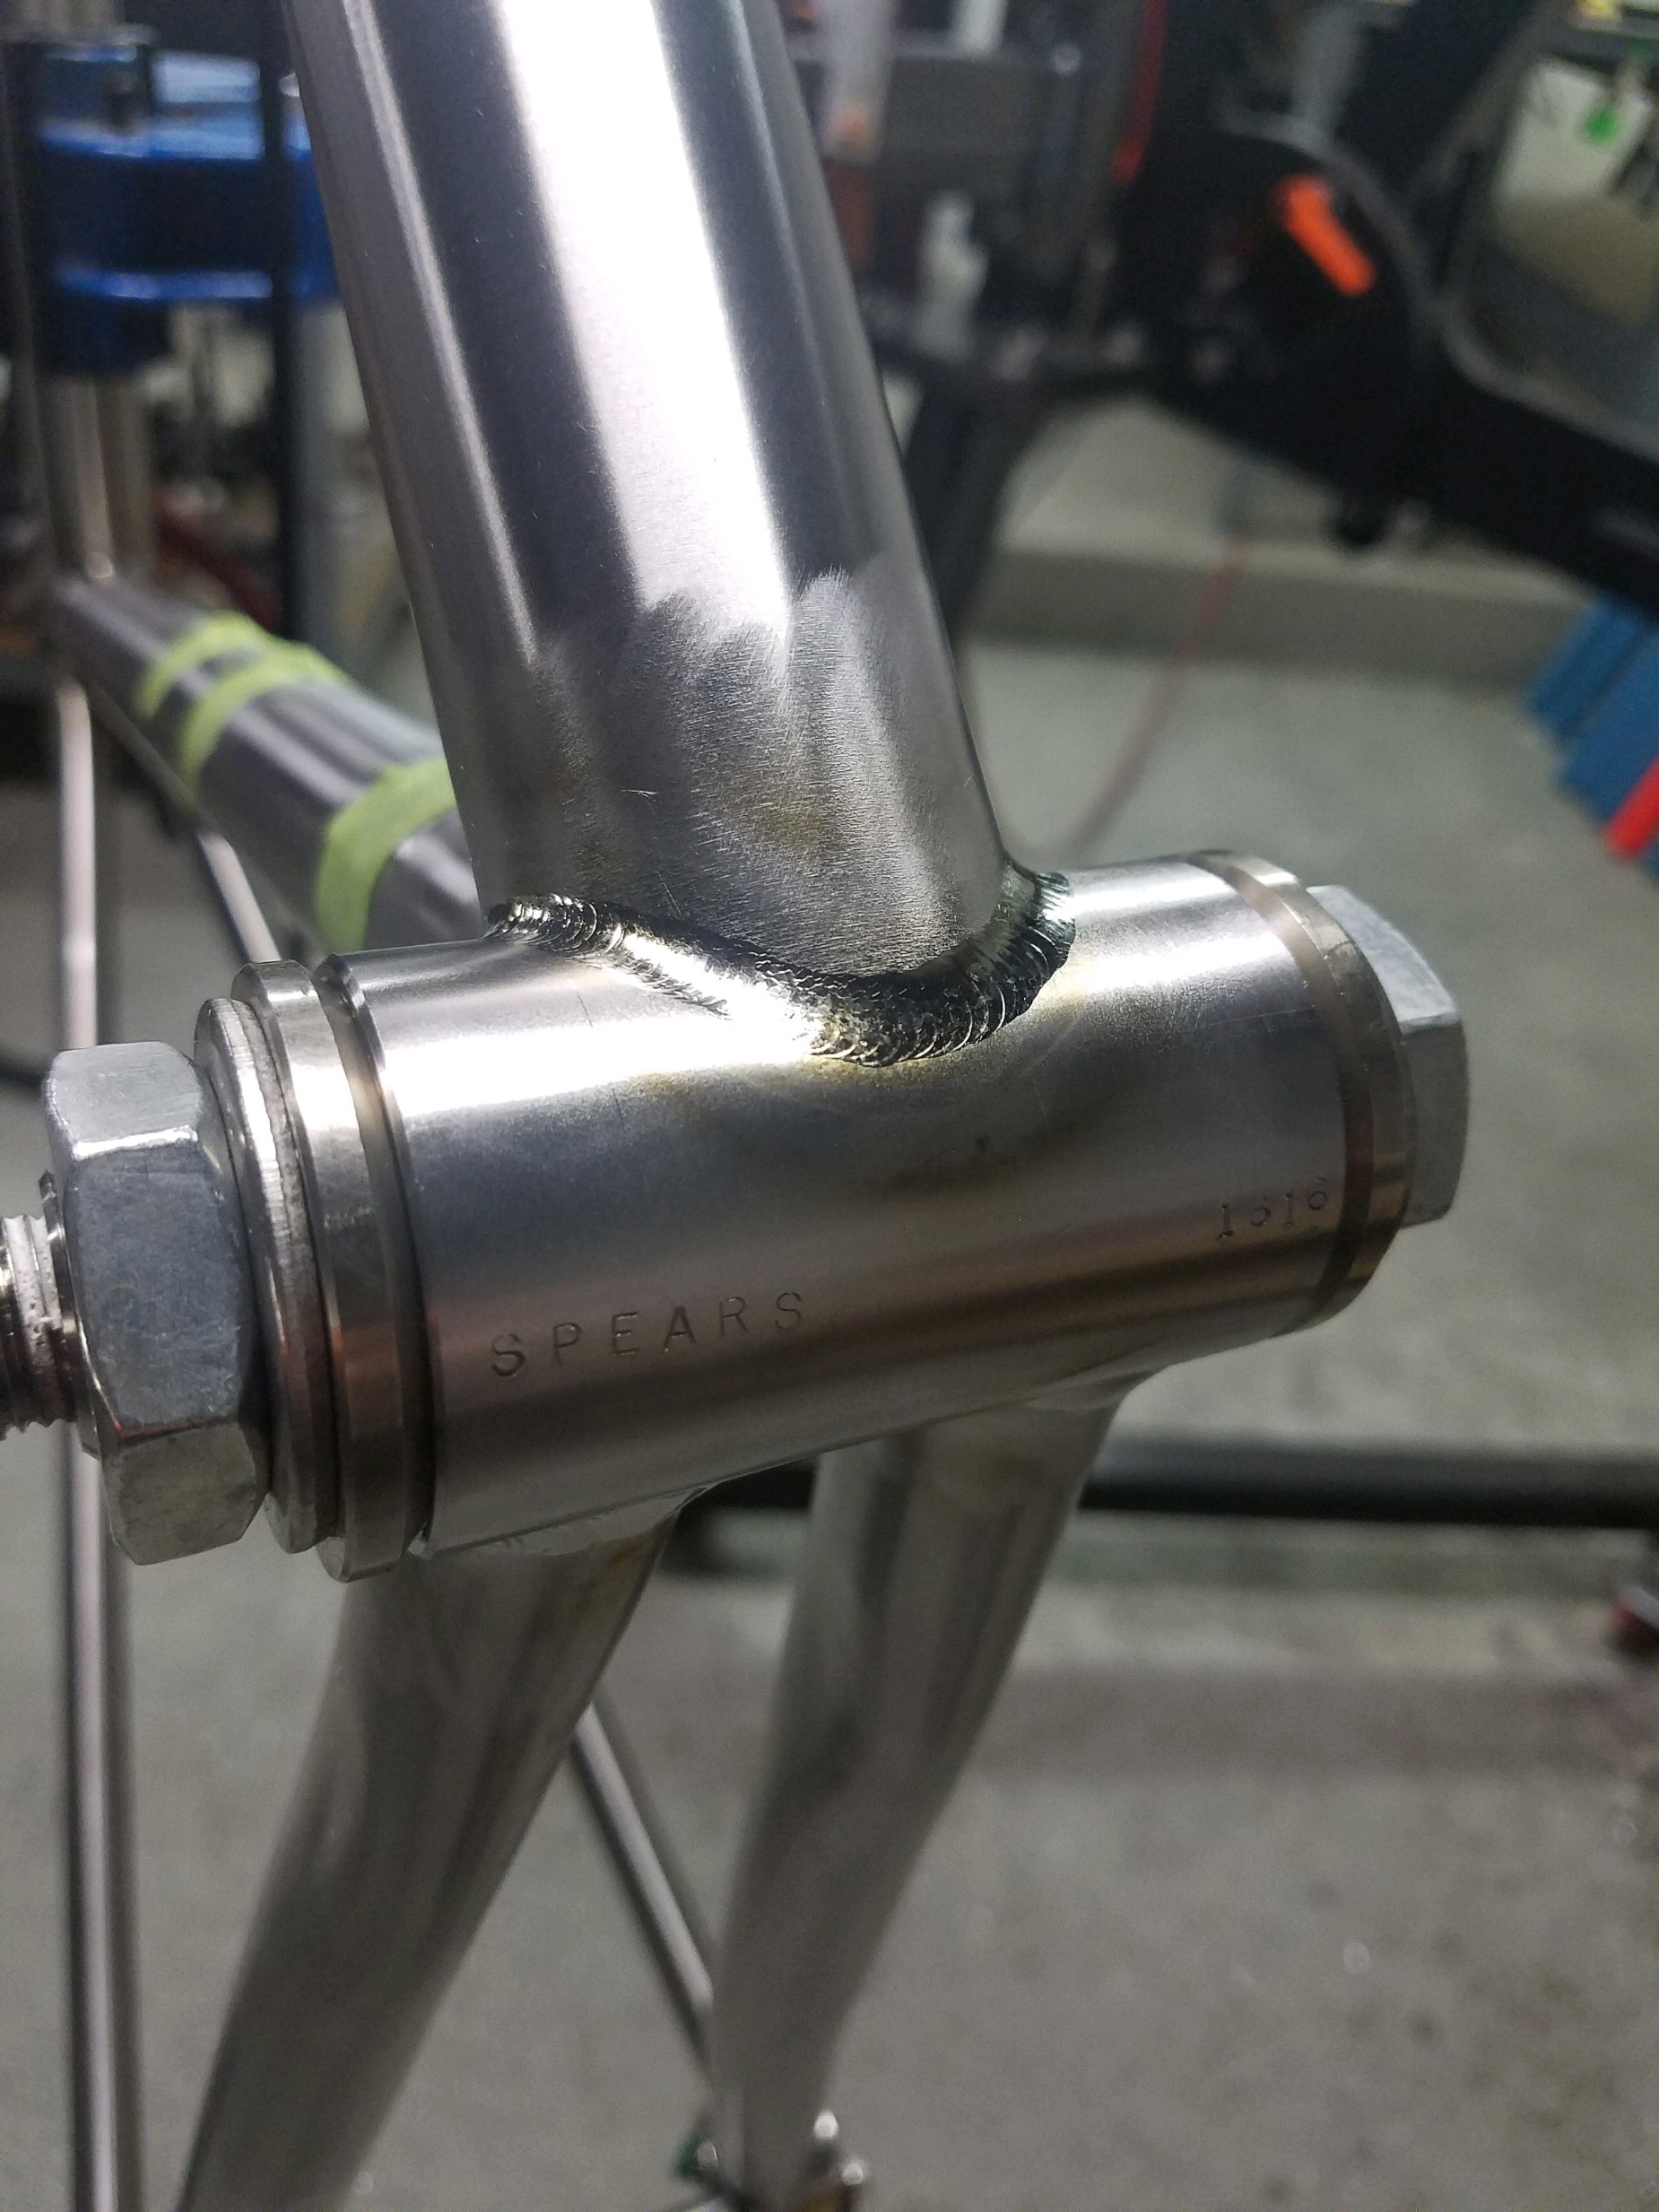 welding aluminum bike frame